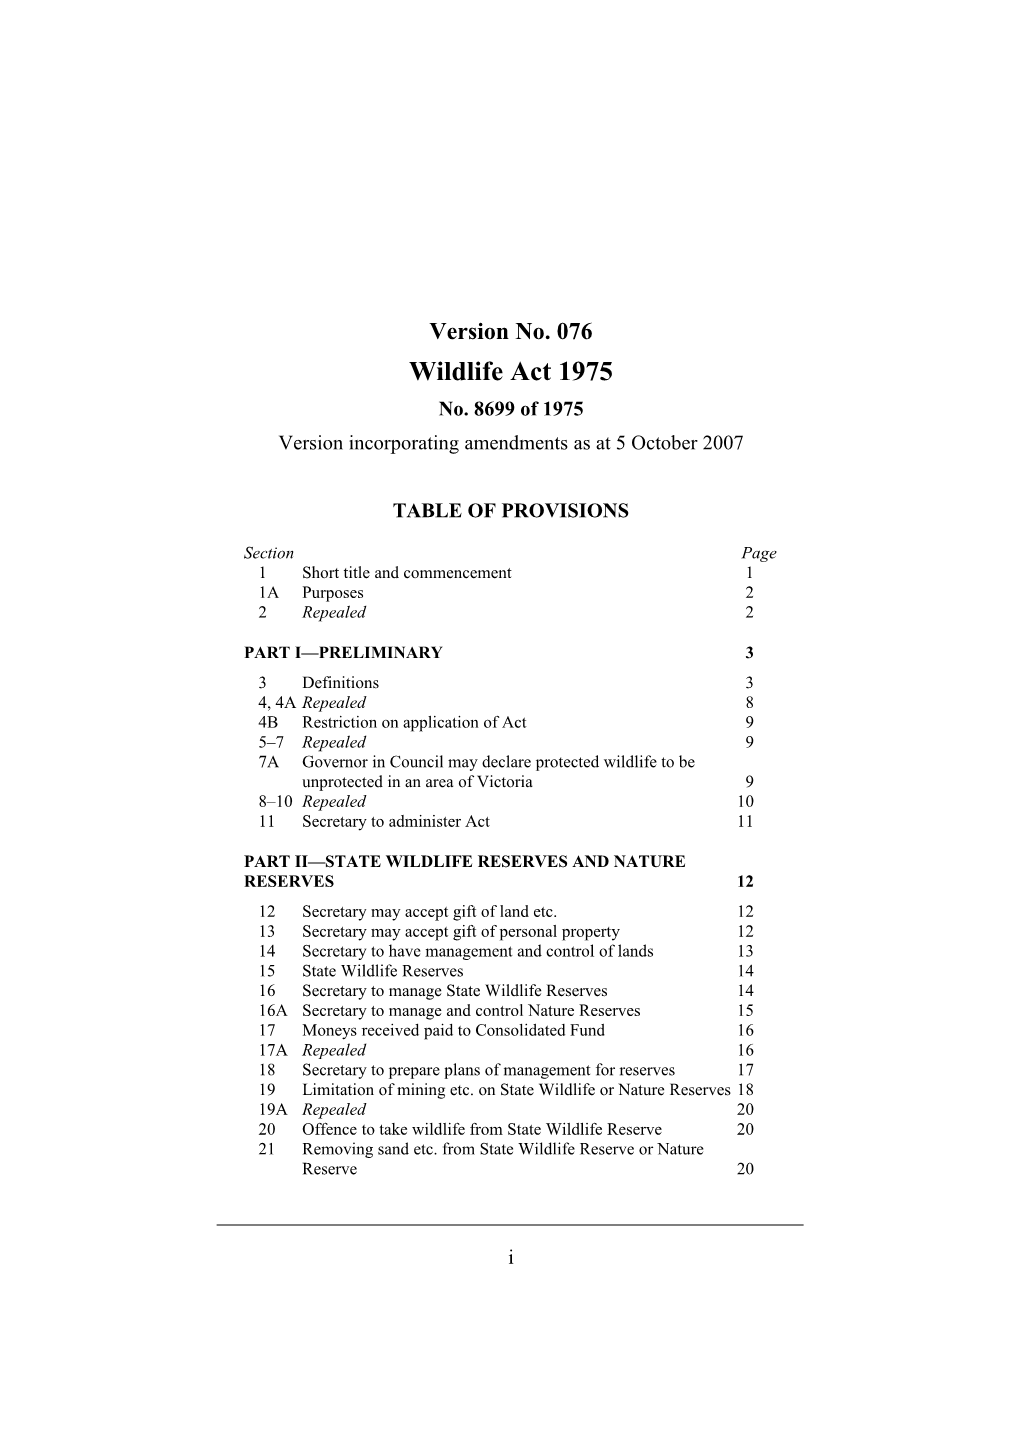 Version Incorporating Amendments As at 5 October 2007